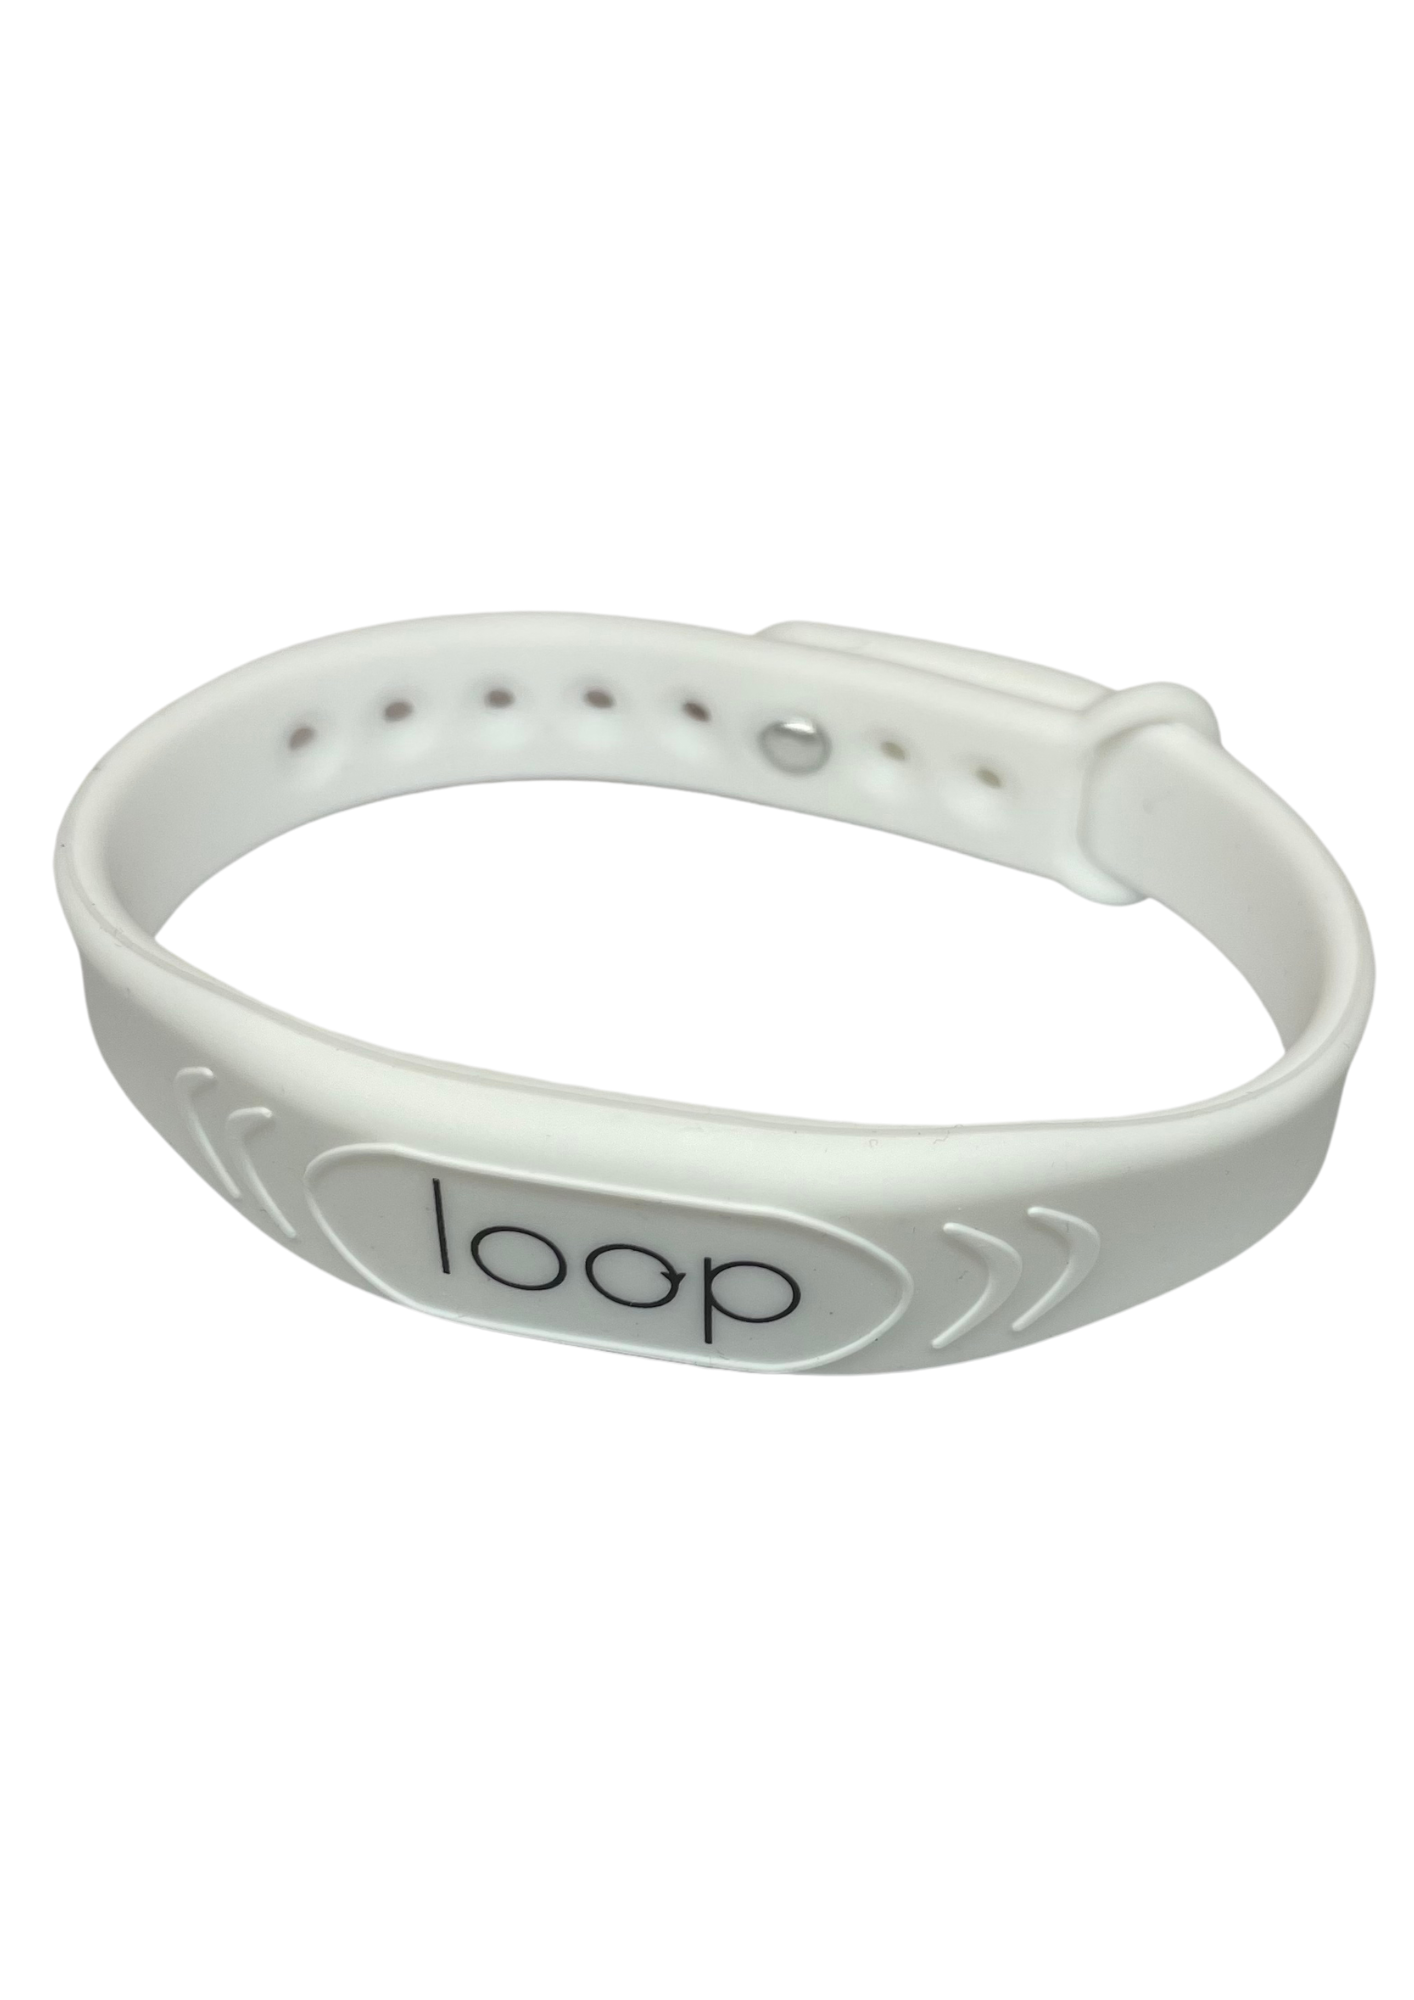 Loop Health Medical Bracelet